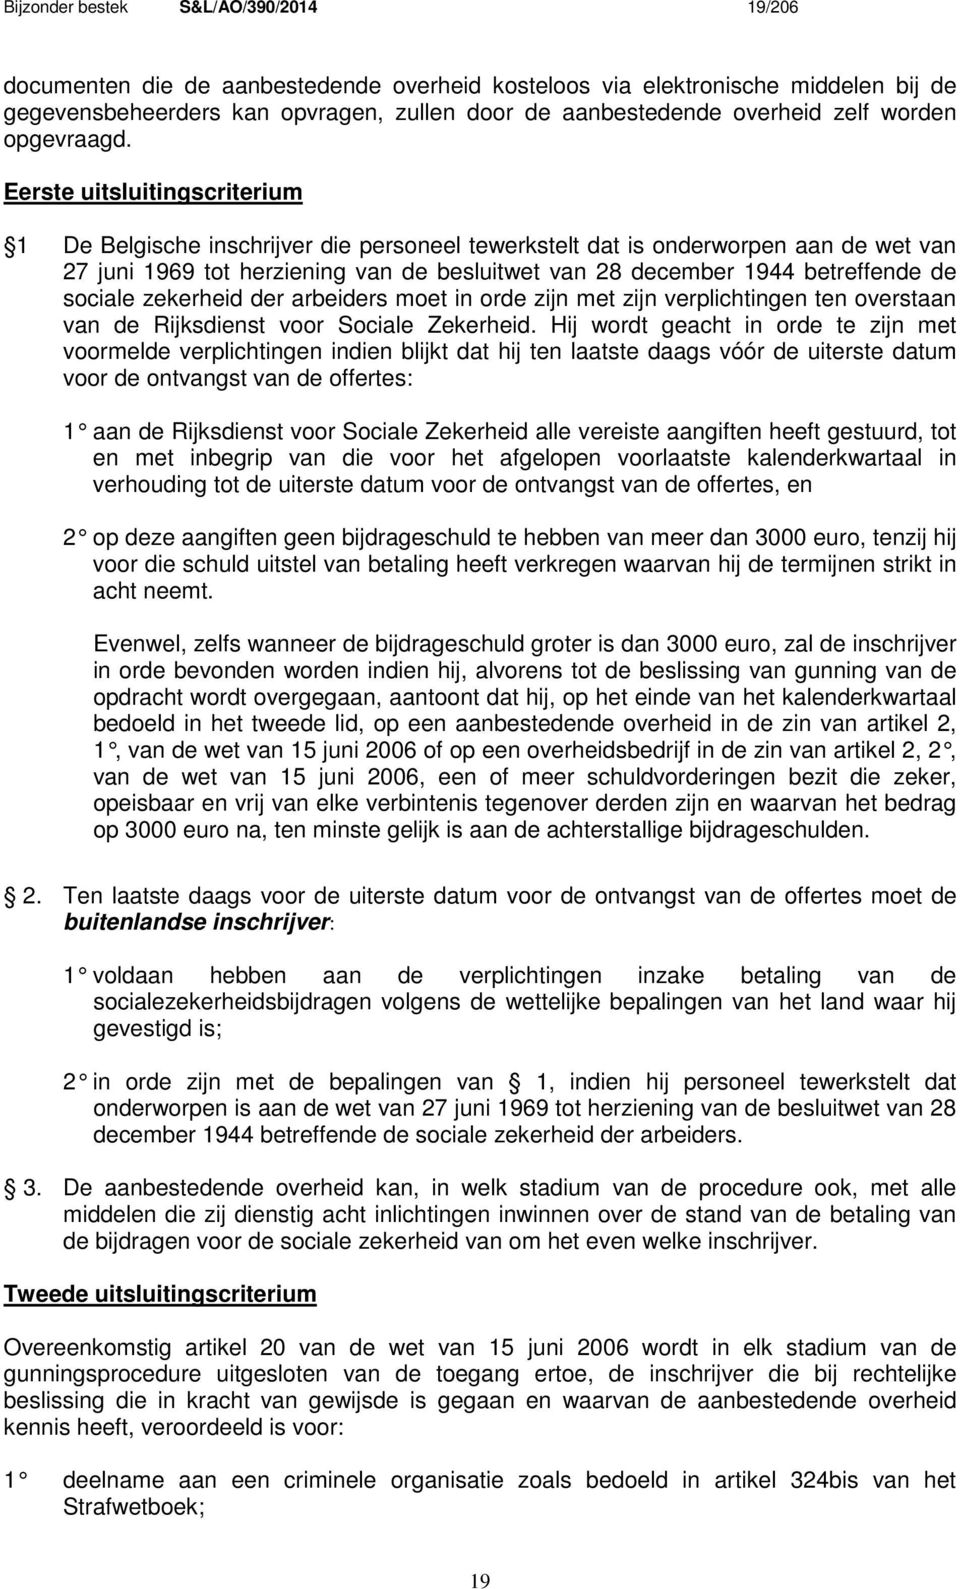 Eerste uitsluitingscriterium 1 De Belgische inschrijver die personeel tewerkstelt dat is onderworpen aan de wet van 27 juni 1969 tot herziening van de besluitwet van 28 december 1944 betreffende de